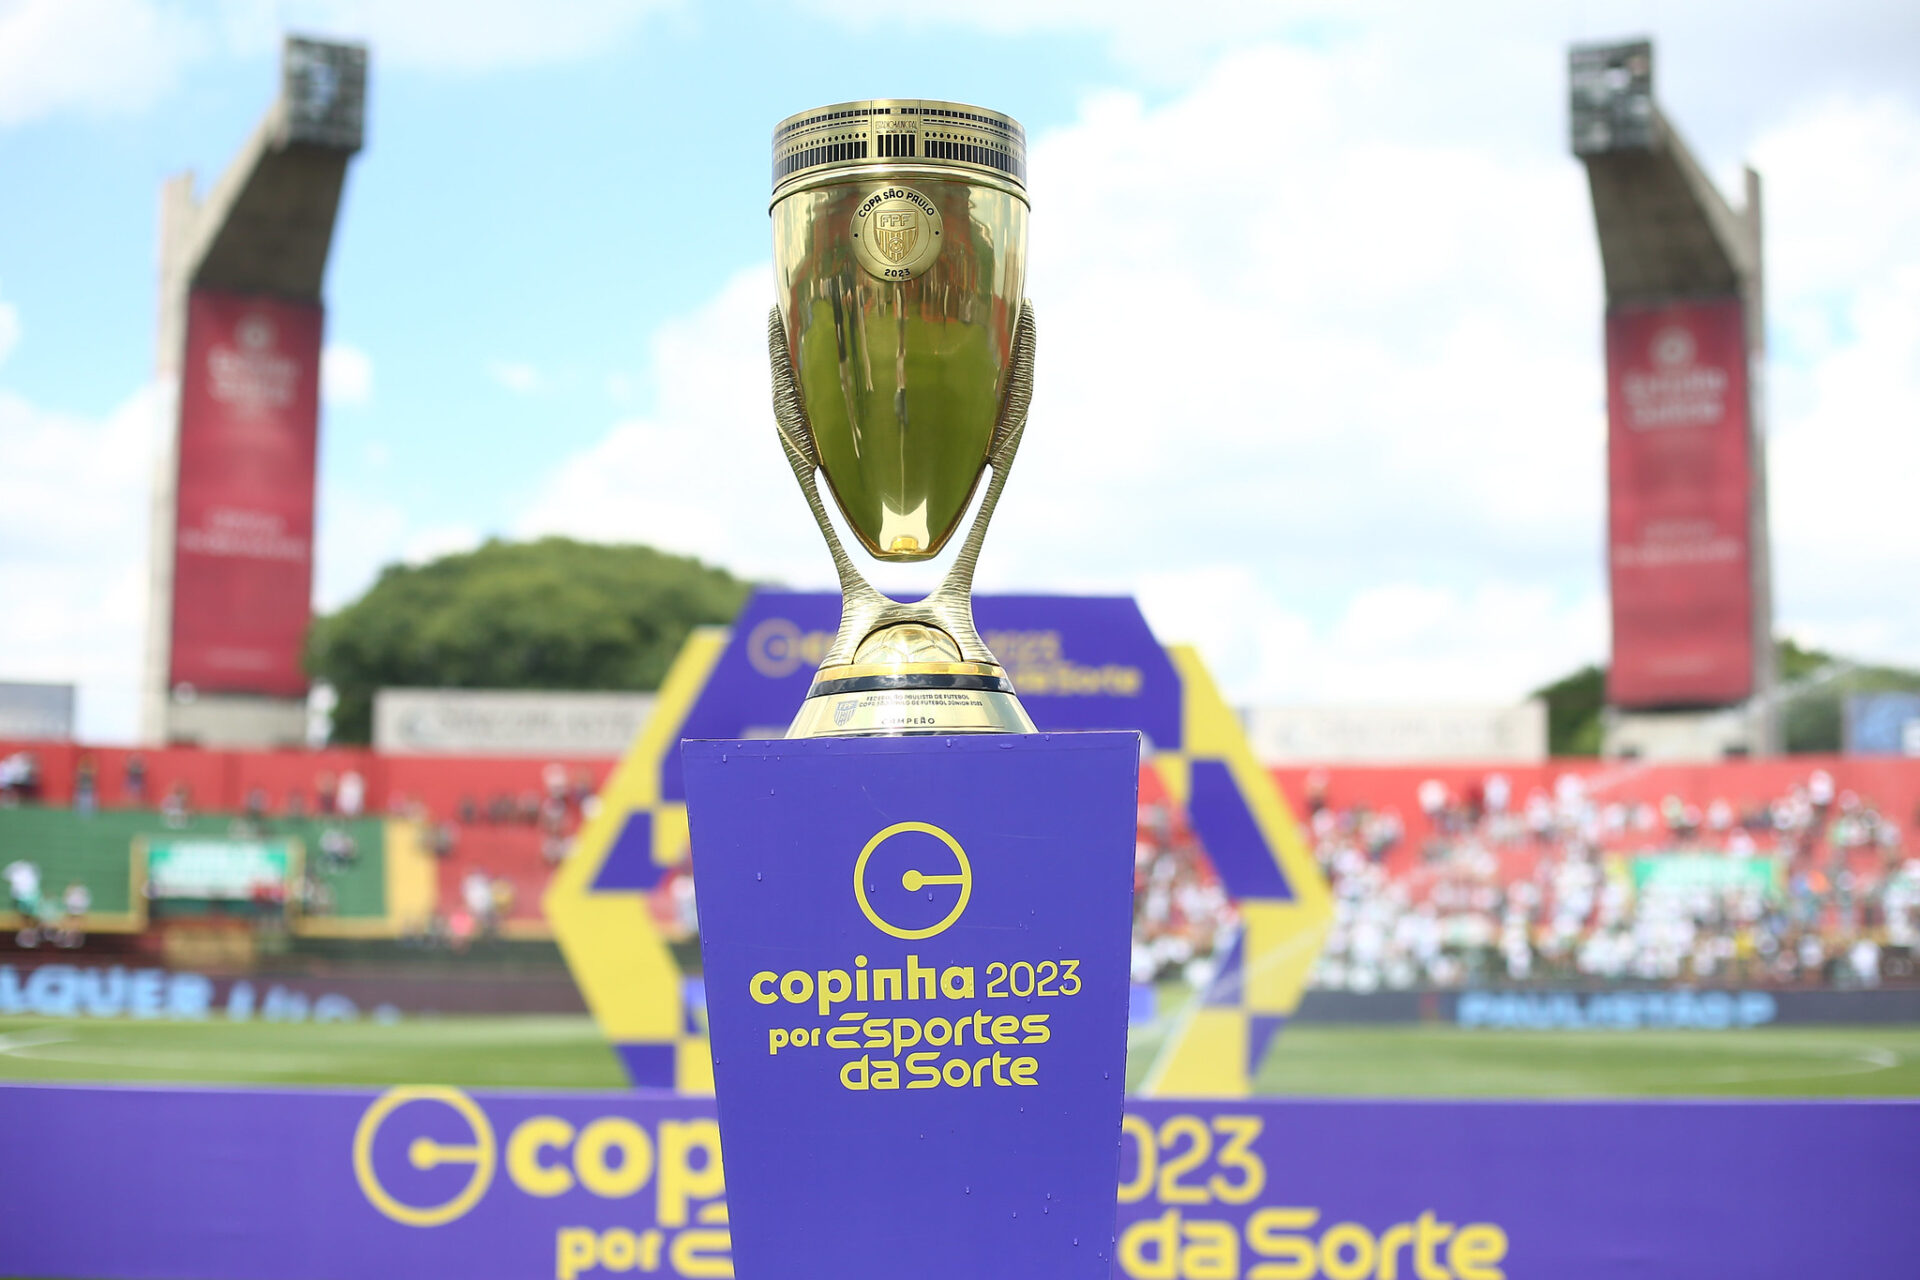 Bragantino conhece grupo da Copinha 2024; jogos serão em